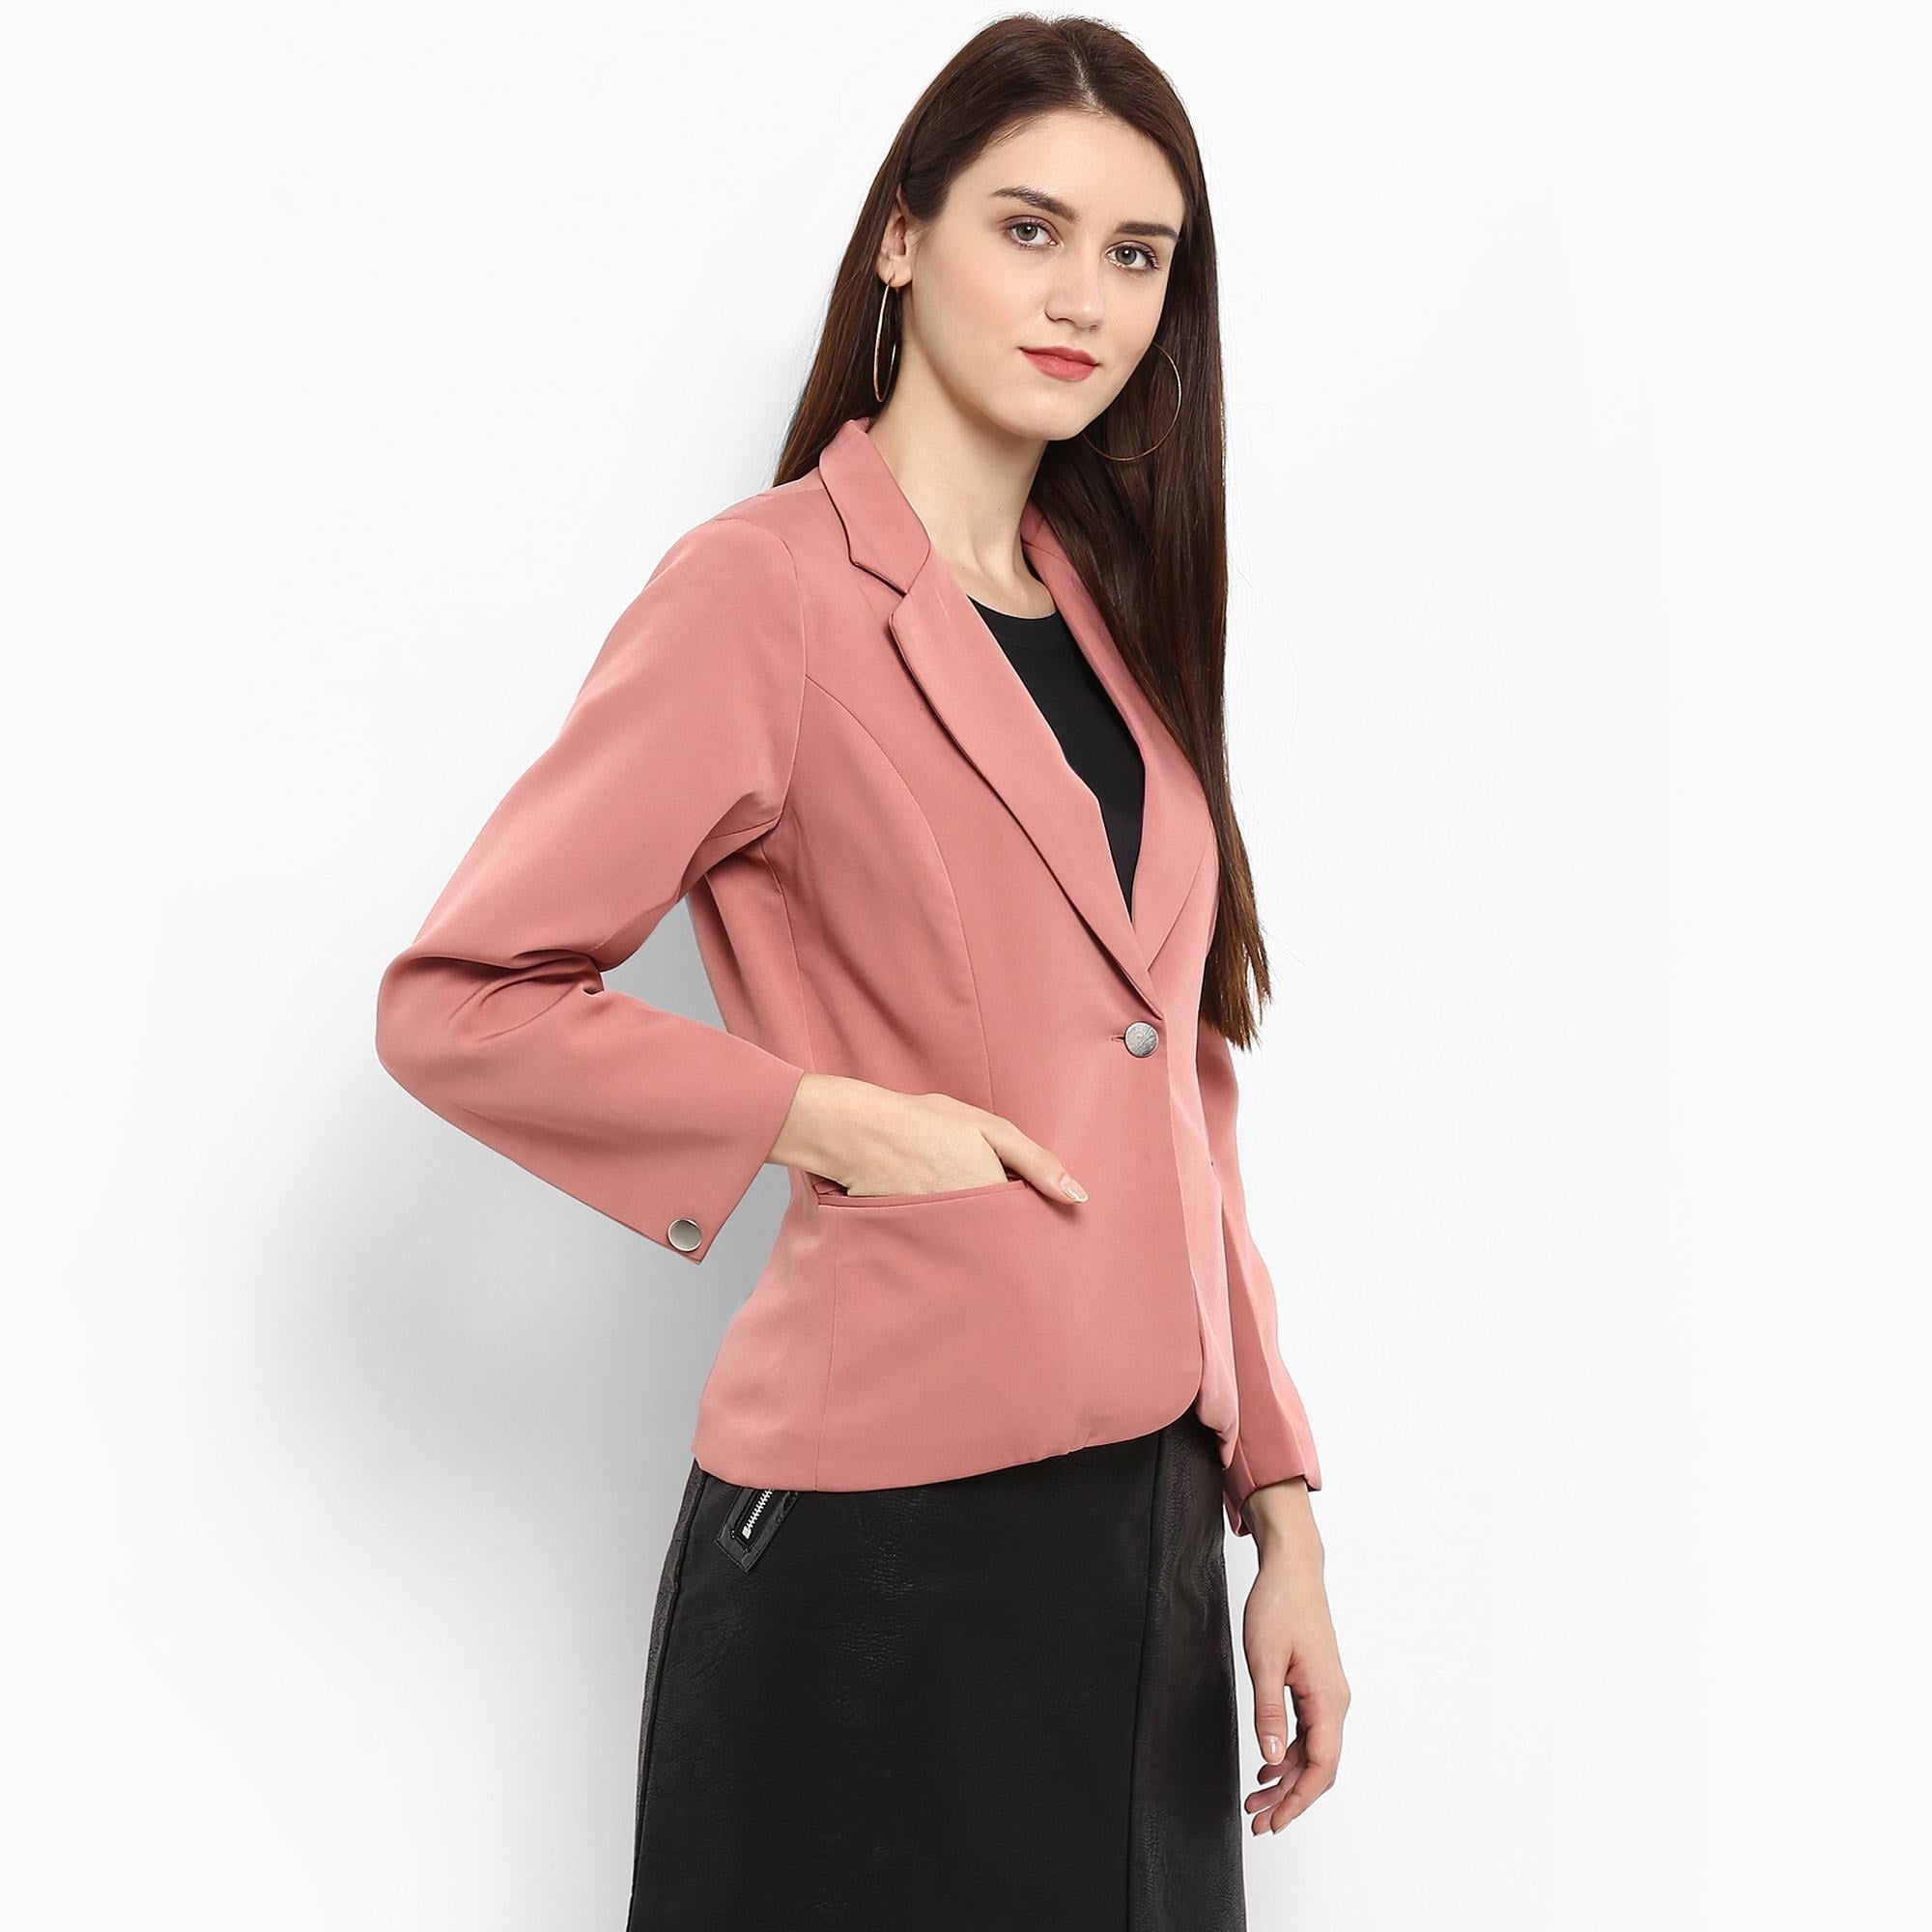 Women's Pastel Pink Collared Blazer - Pannkh